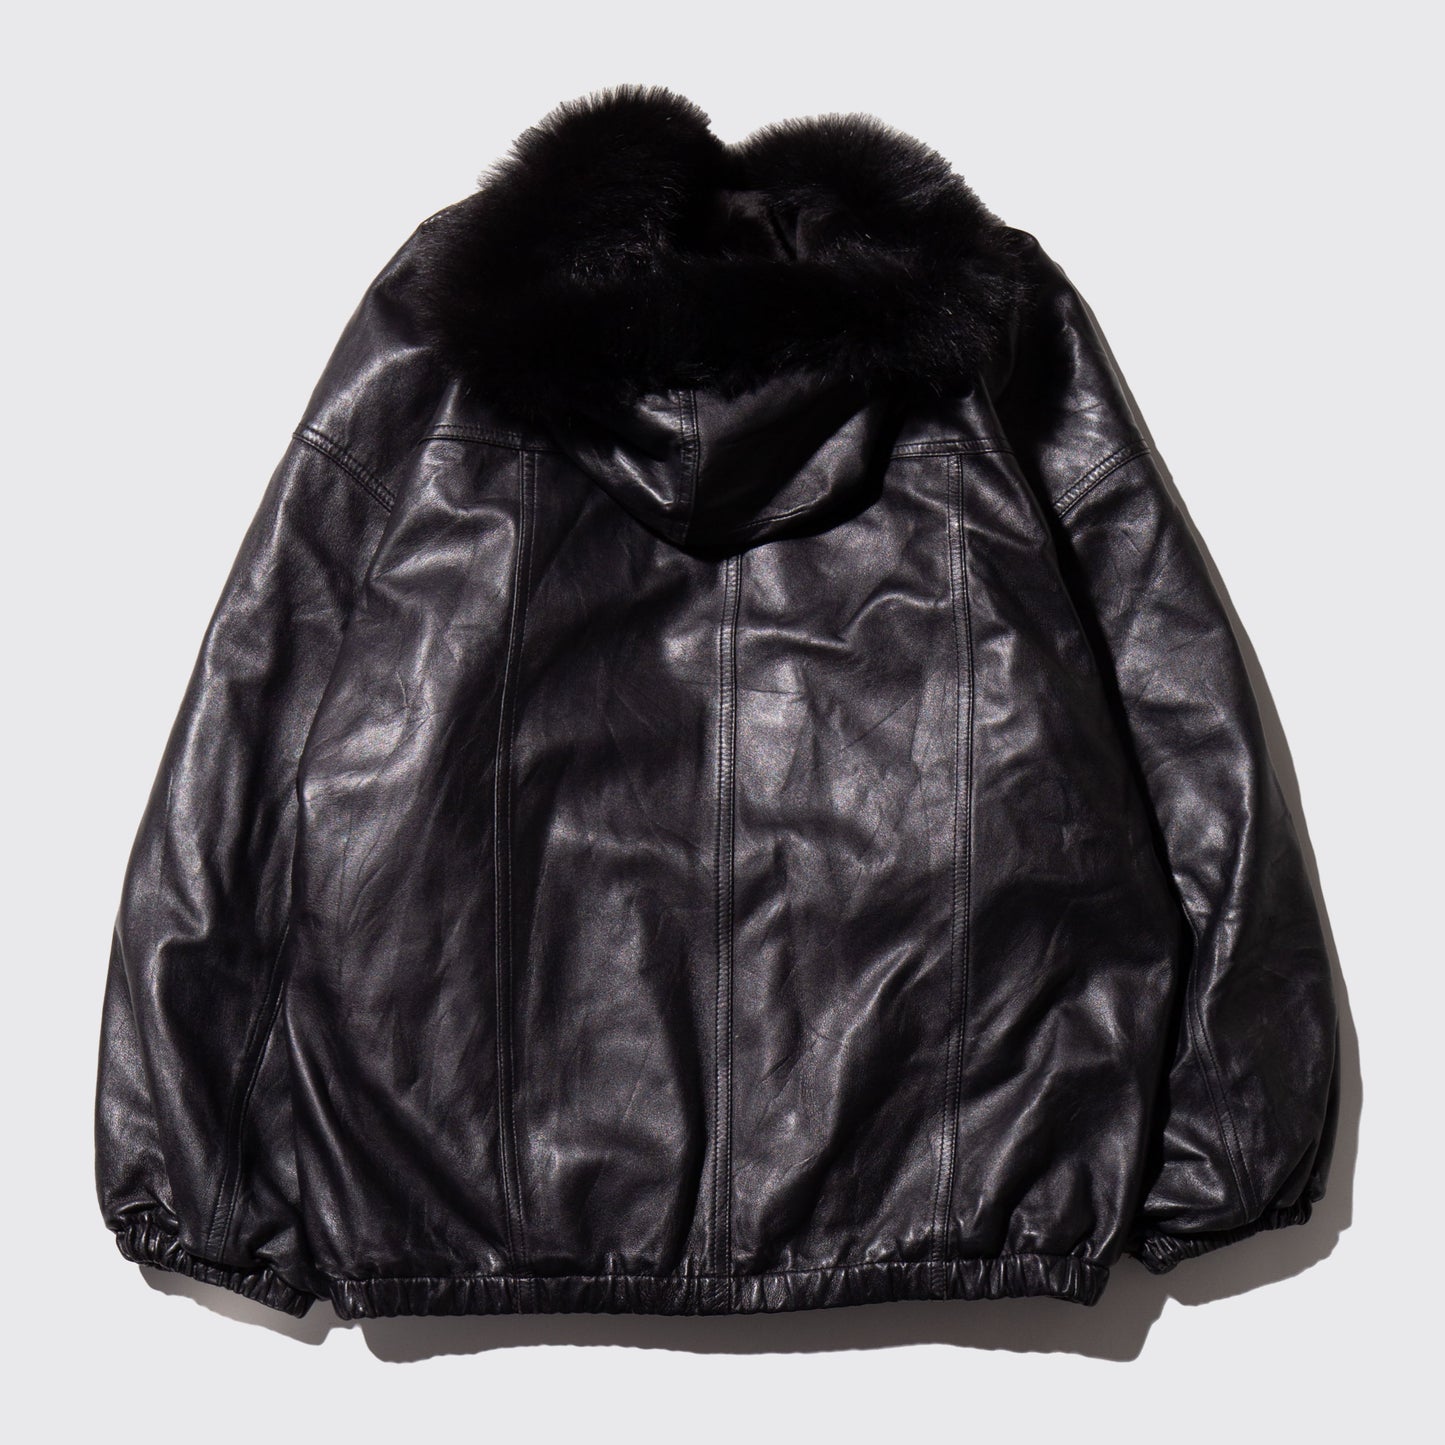 vintage loose fur leather parka